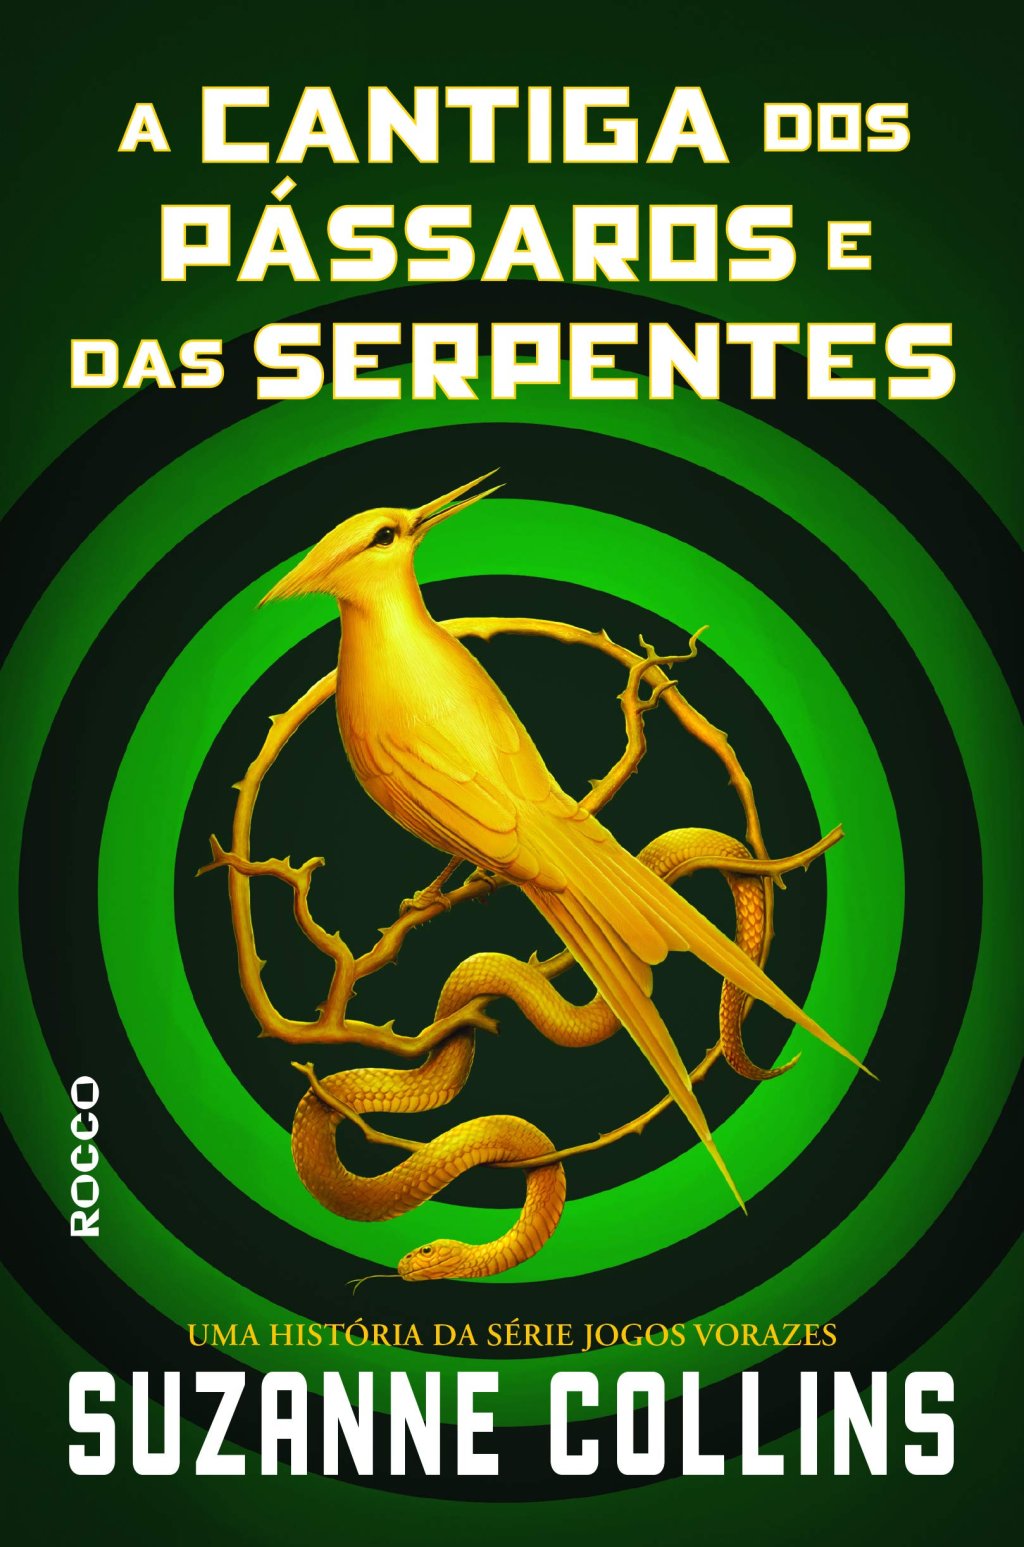 Capa de A Cantiga dos Pássaros e das Serpentes com com círculos em tons de verde em um todo em dourado no centro; o título está na parte superior central escrito em branco